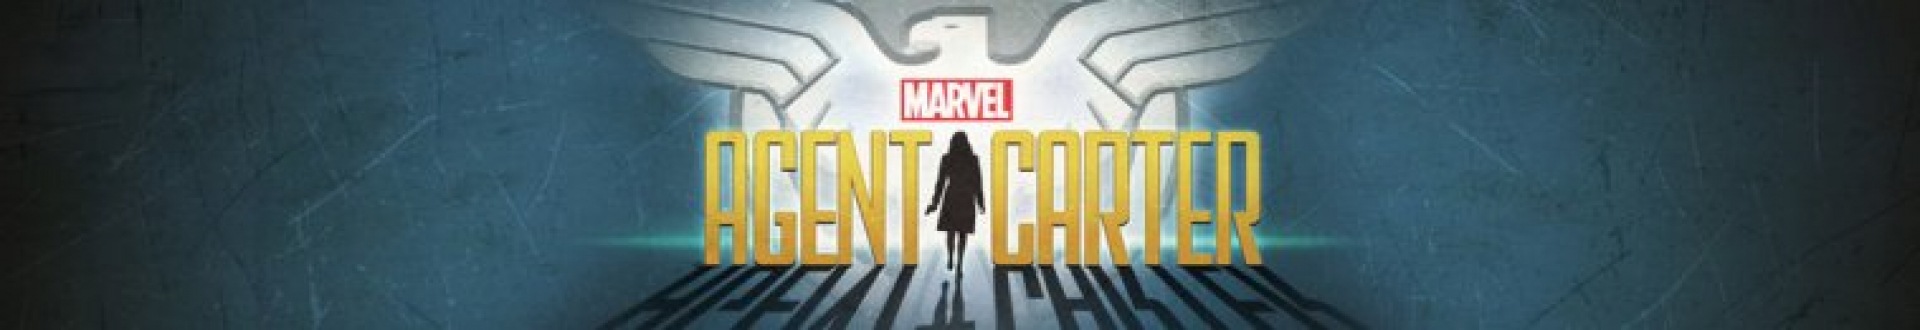 Image illustrative de Marvel's Agent Carter